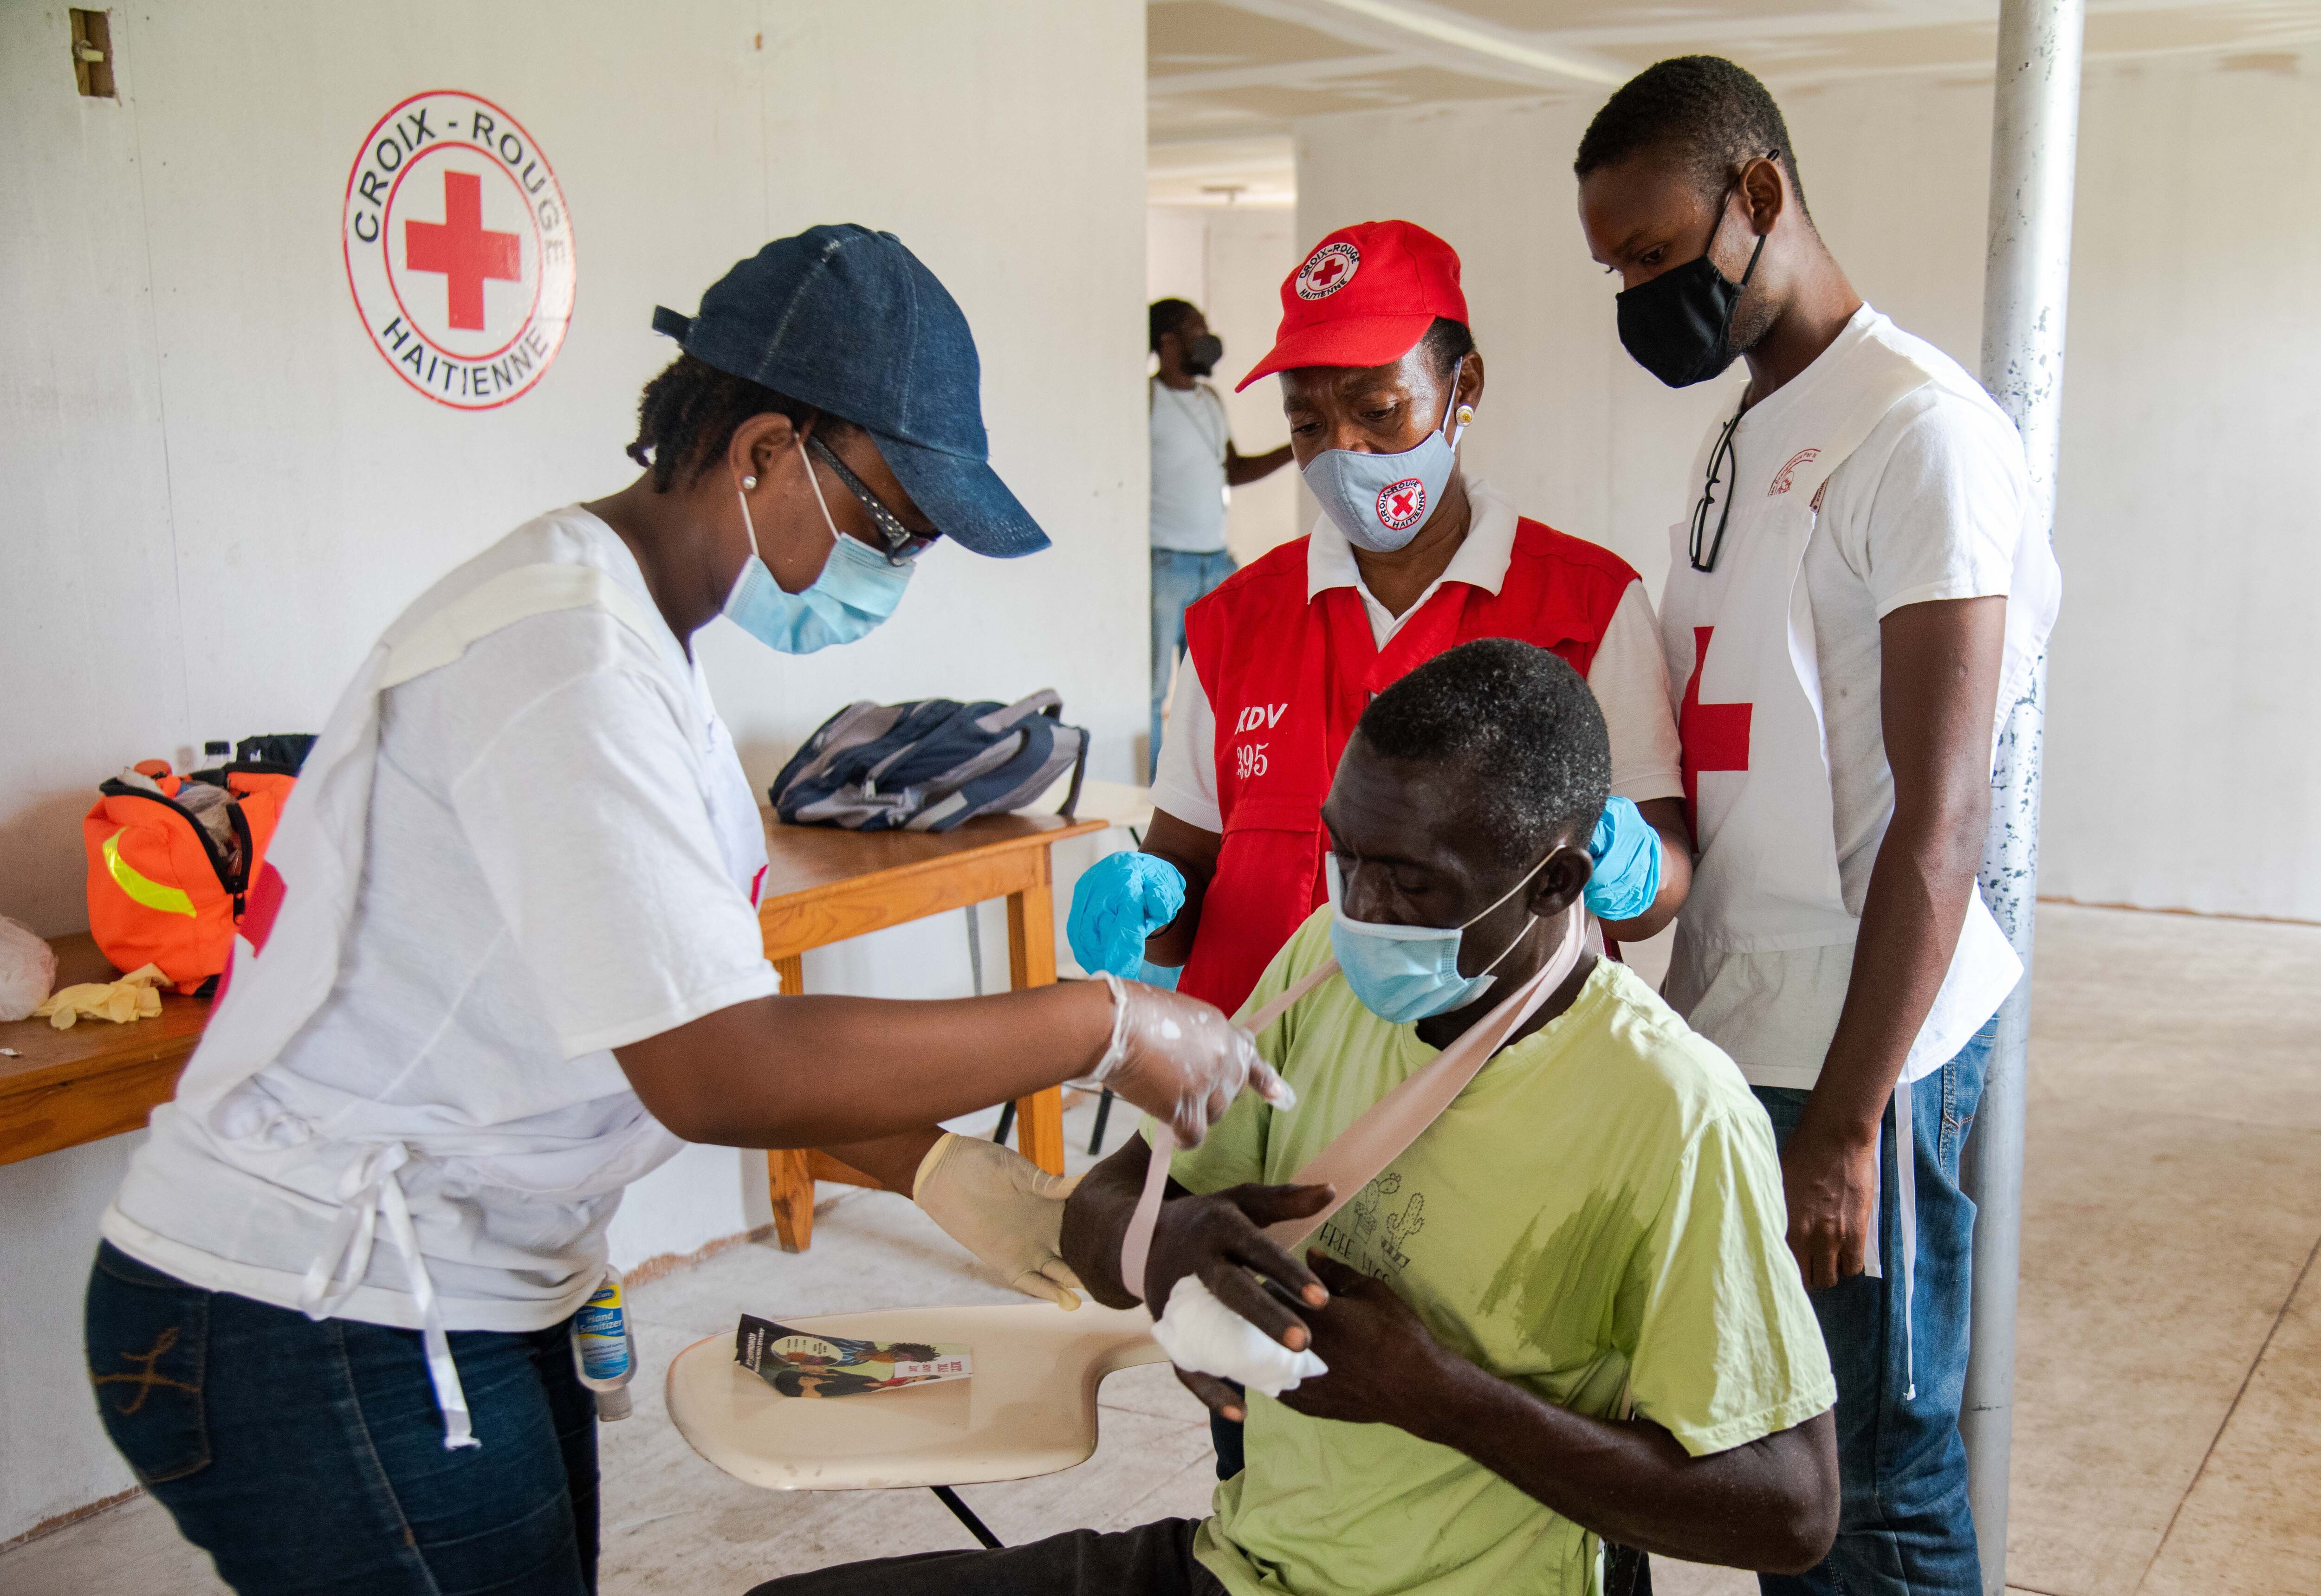 Foto de archivo de un hombre que recibe atención de integrantes de la Cruz Roja en Haití. EFE/Jean Marc Herve Abelard